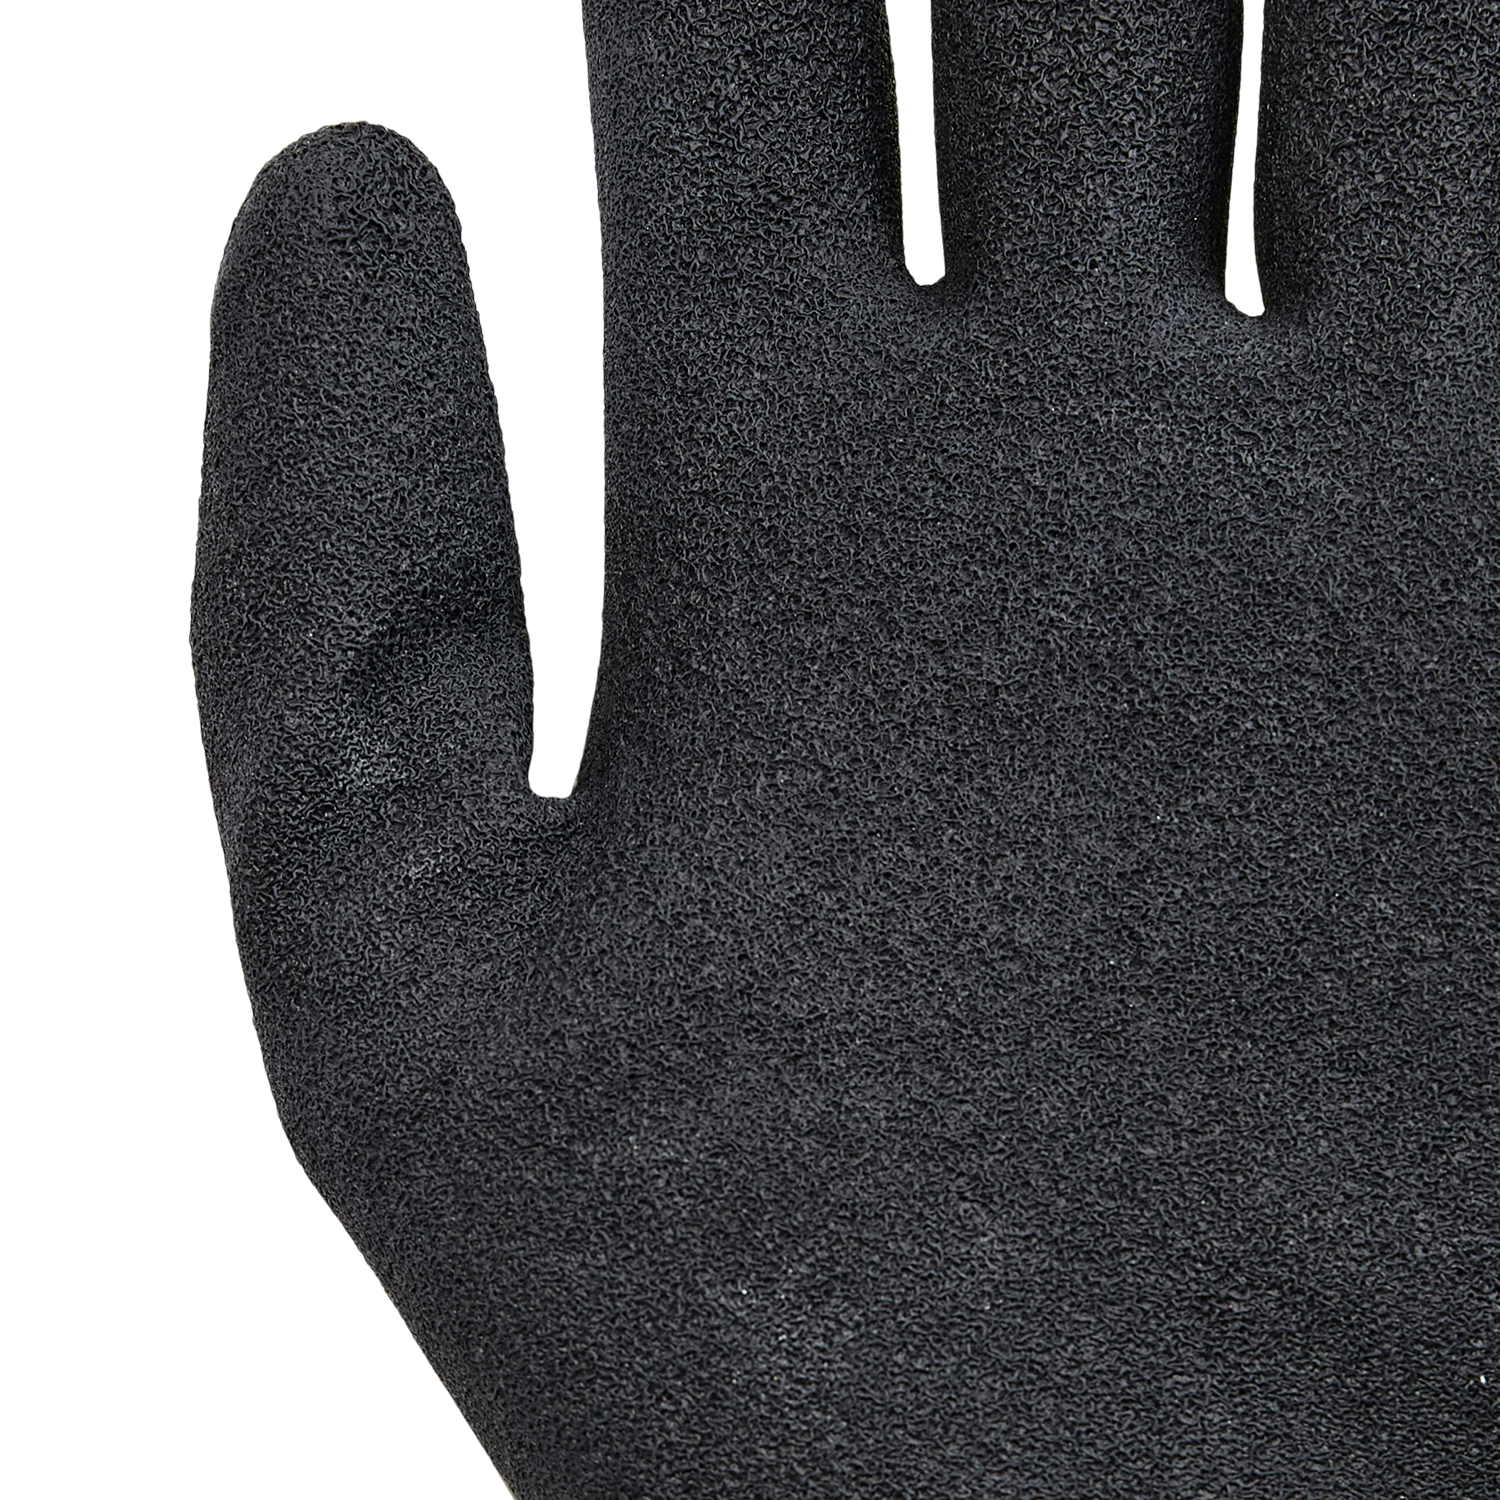 NORSE Light assembly gloves size 7